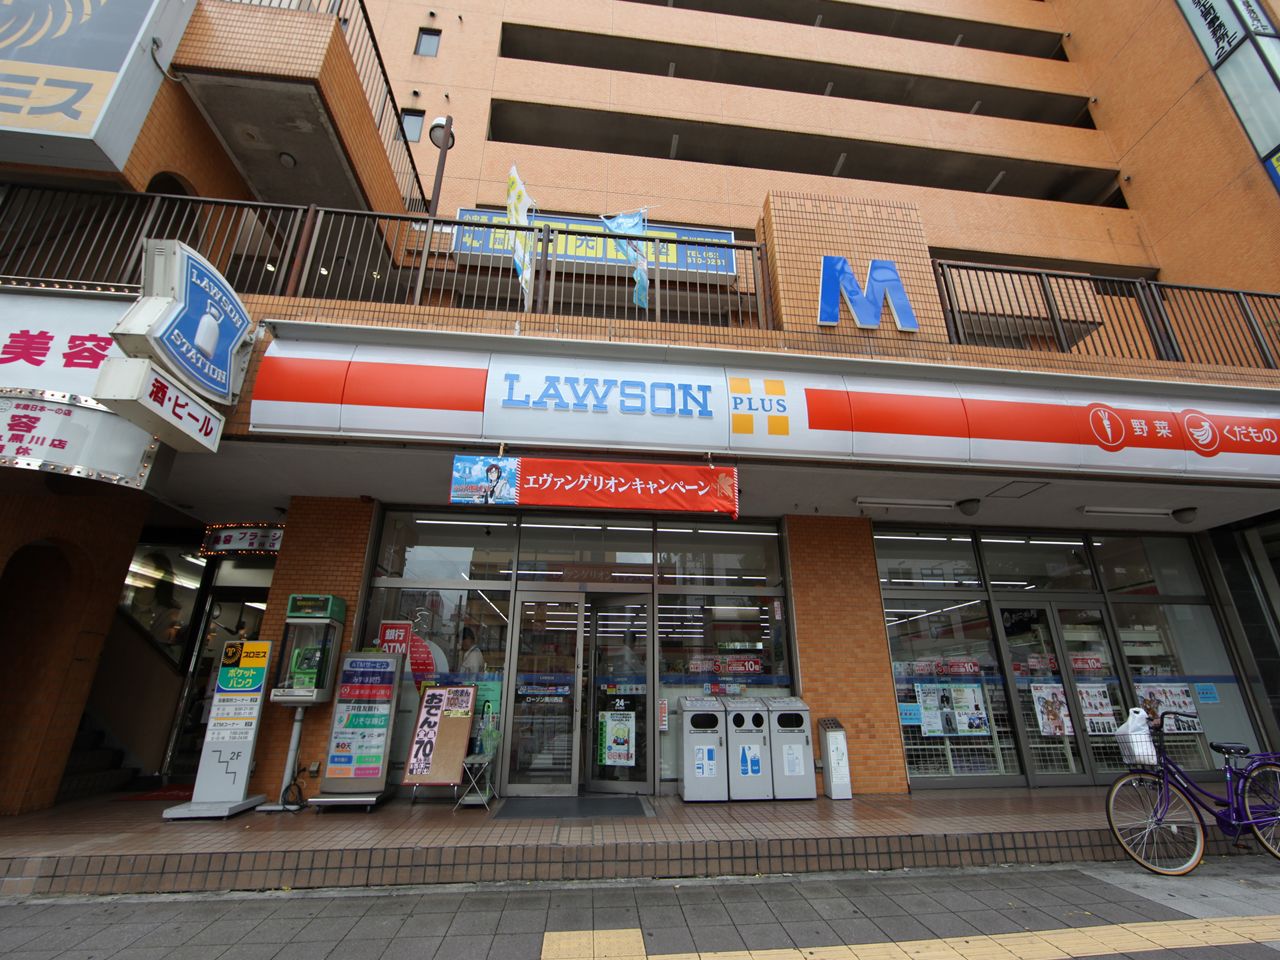 Convenience store. 199m until Lawson L Kurokawa Nishiten (convenience store)